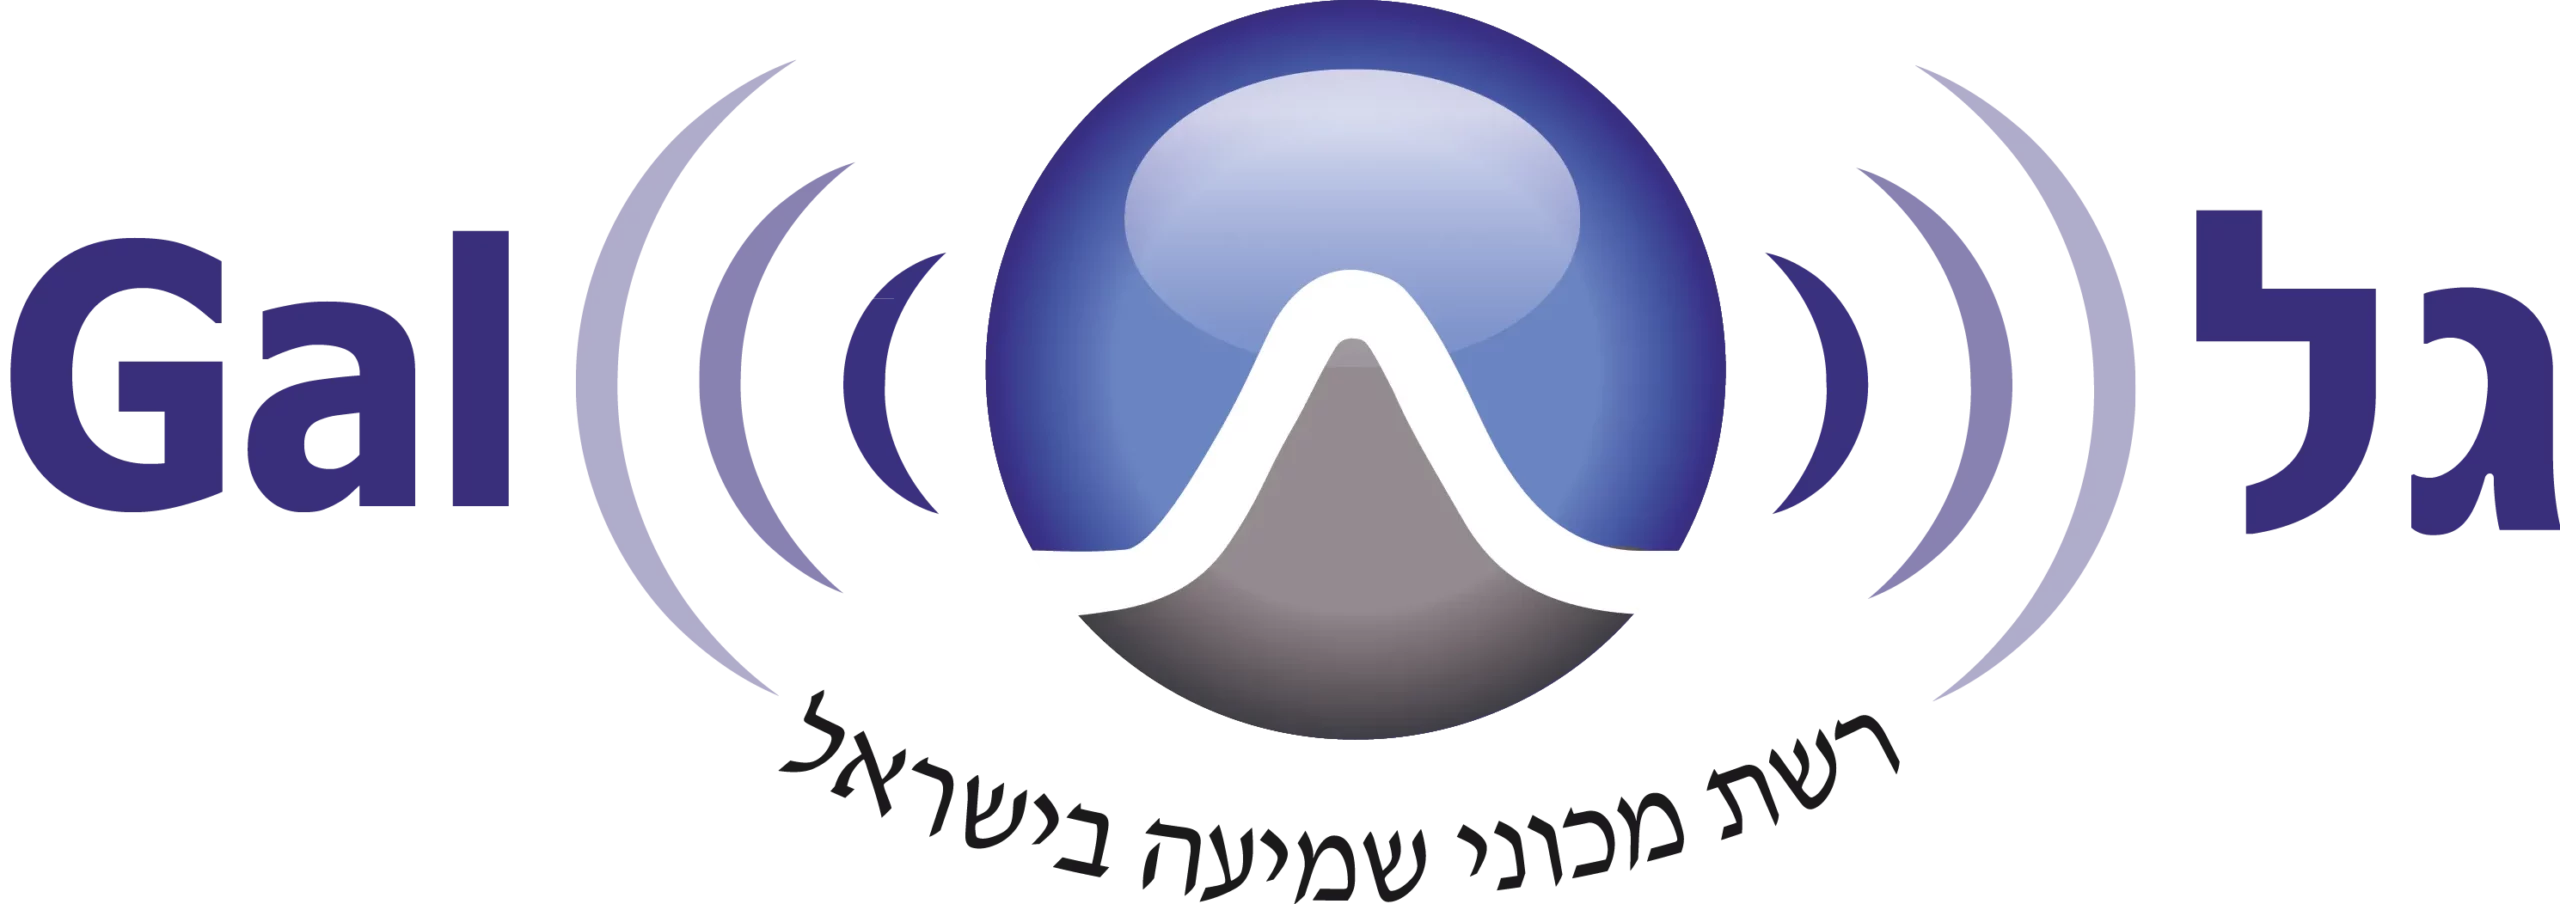 לוגו גל רשת מכוני שמיעה בישראל ווקטורי